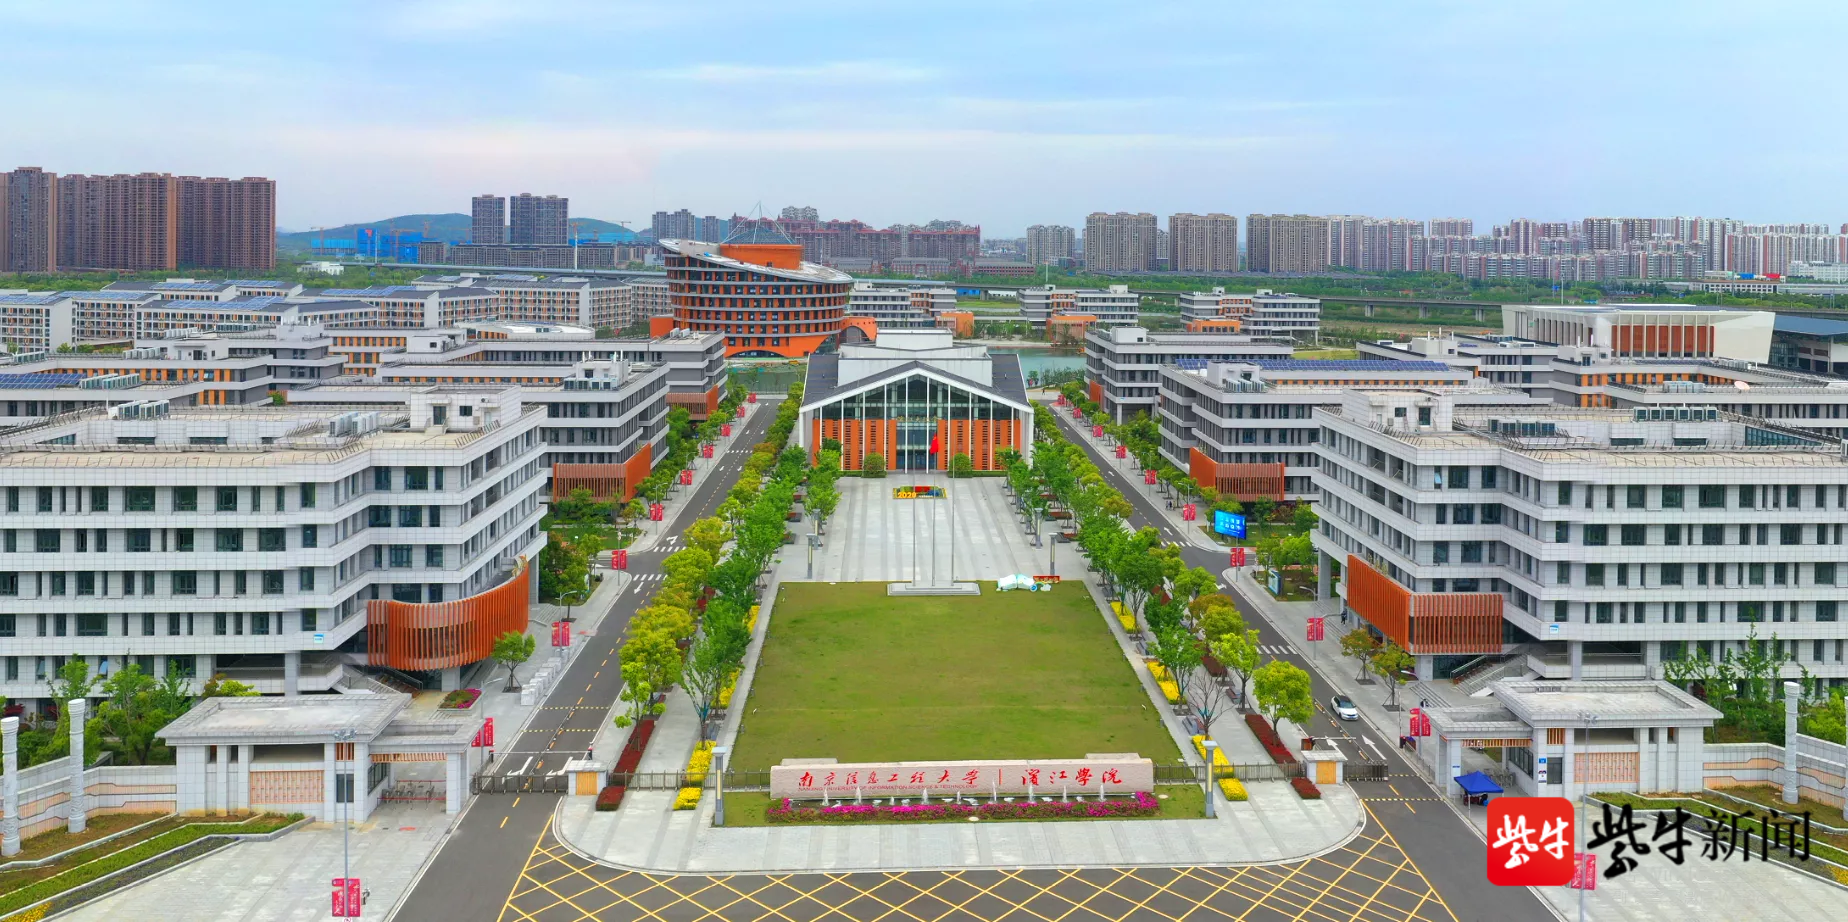 南京信息工程大学滨江学院将变更为"无锡学院"